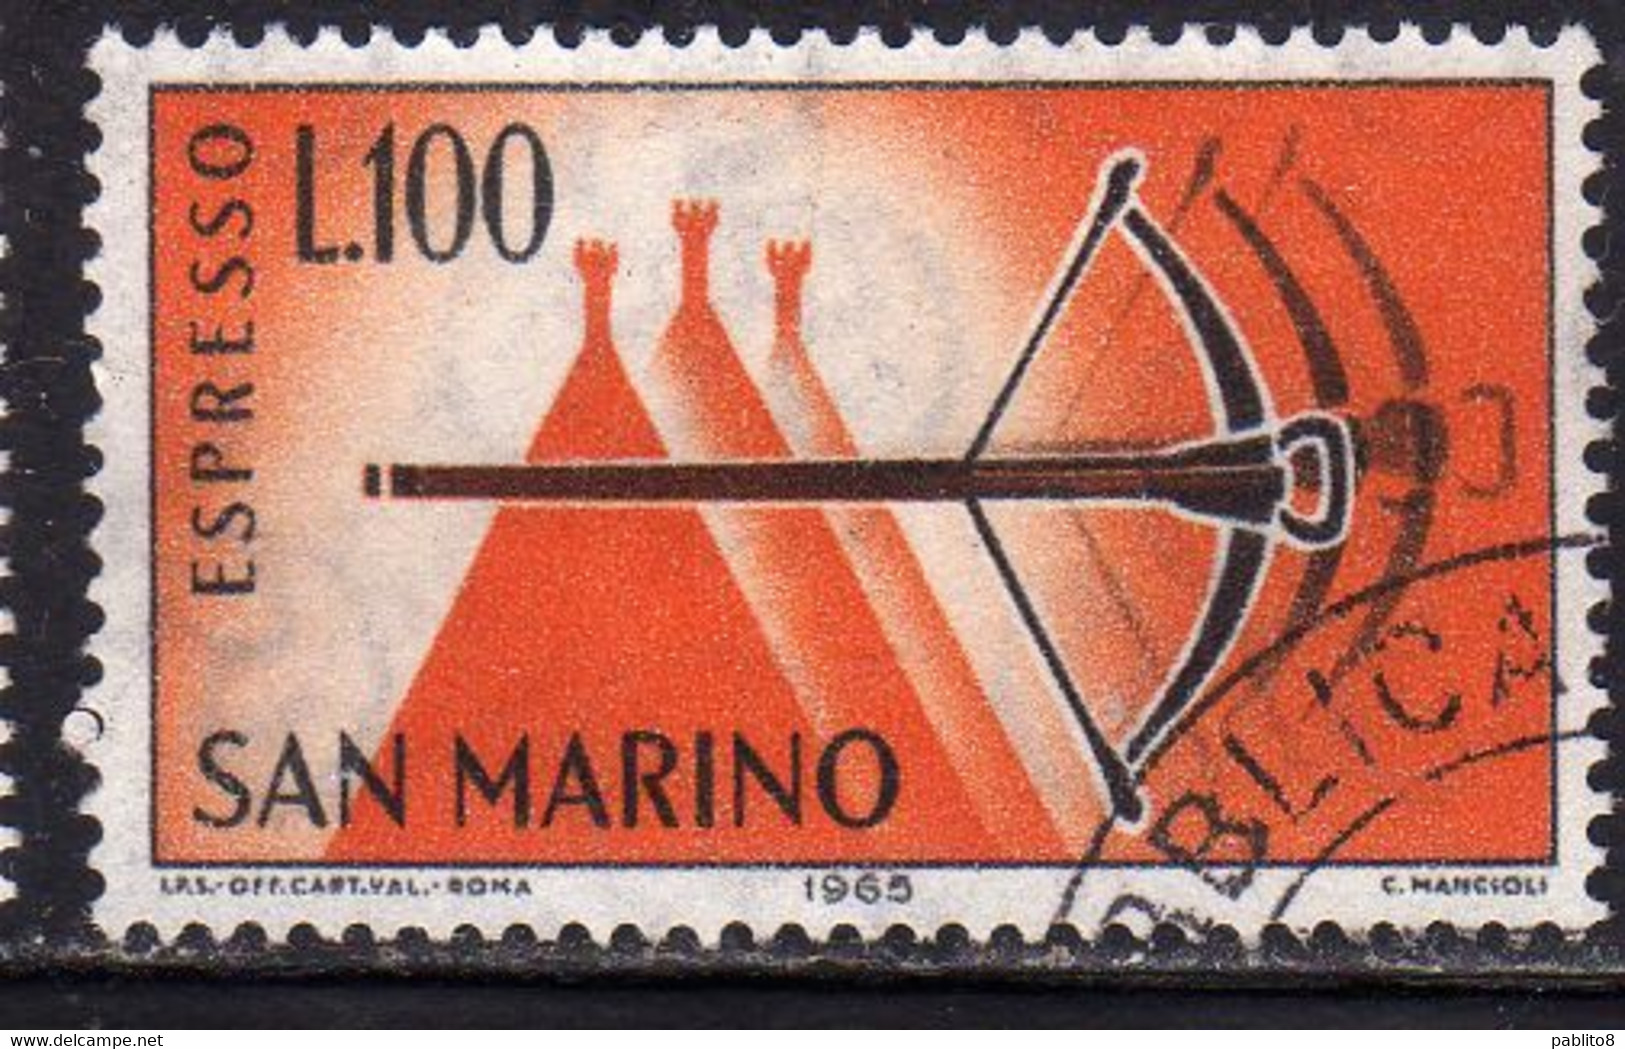 REPUBBLICA DI SAN MARINO 1966 ESPRESSI SPECIAL DELIVERY ESPRESSO BALESTRA LIRE 100 USATO USED OBLITERE' - Timbres Express